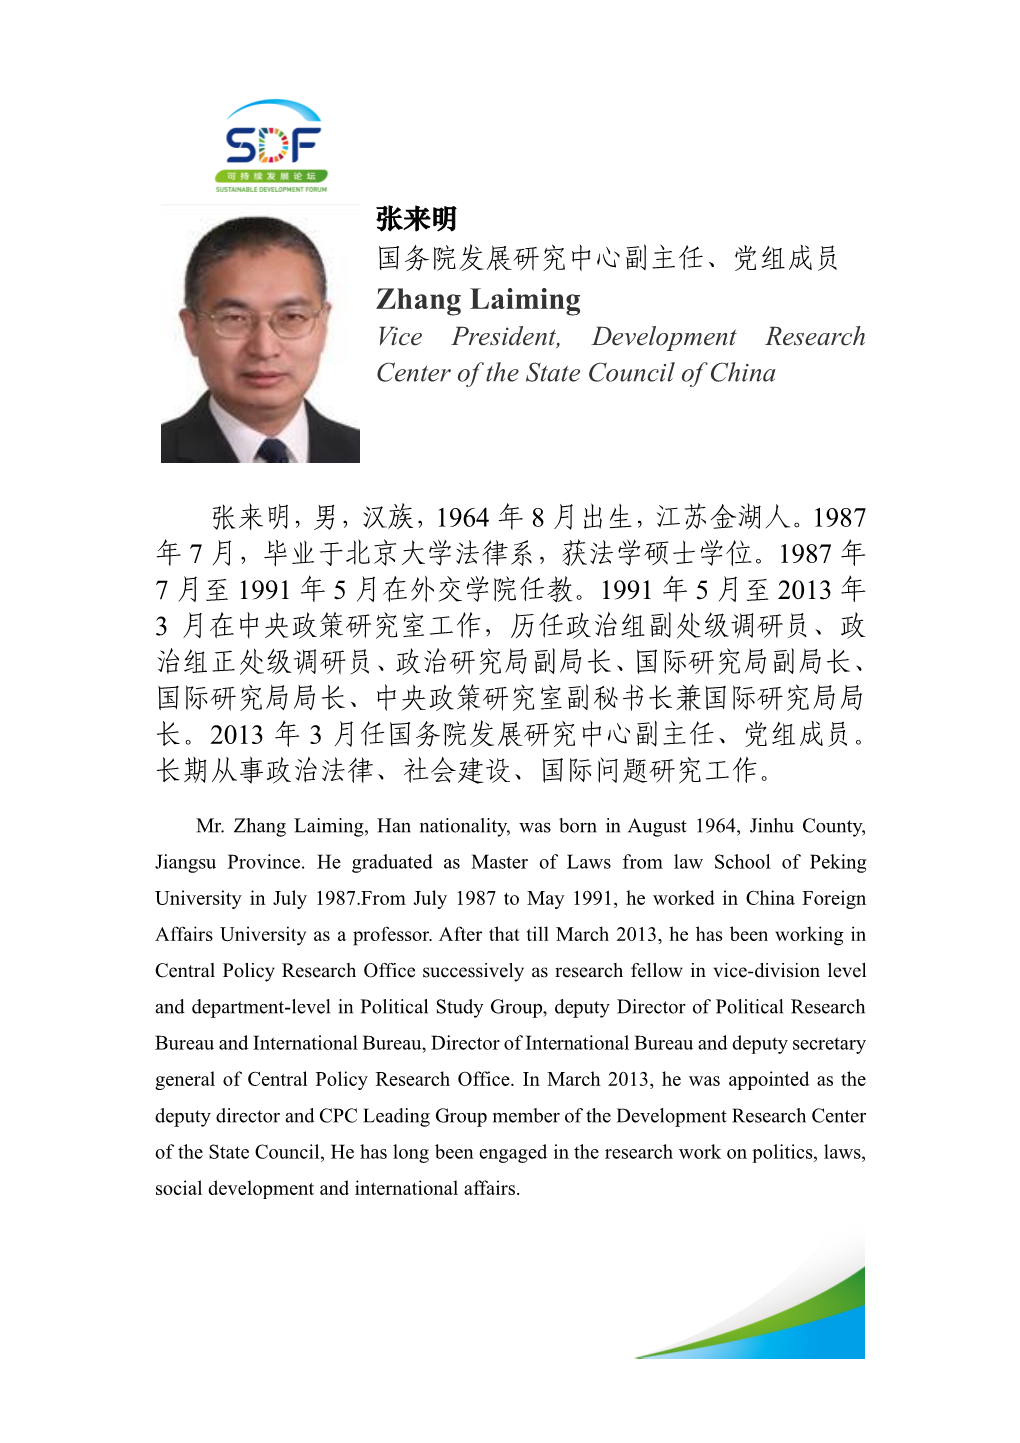 张来明国务院发展研究中心副主任、党组成员- Zhang Laiming